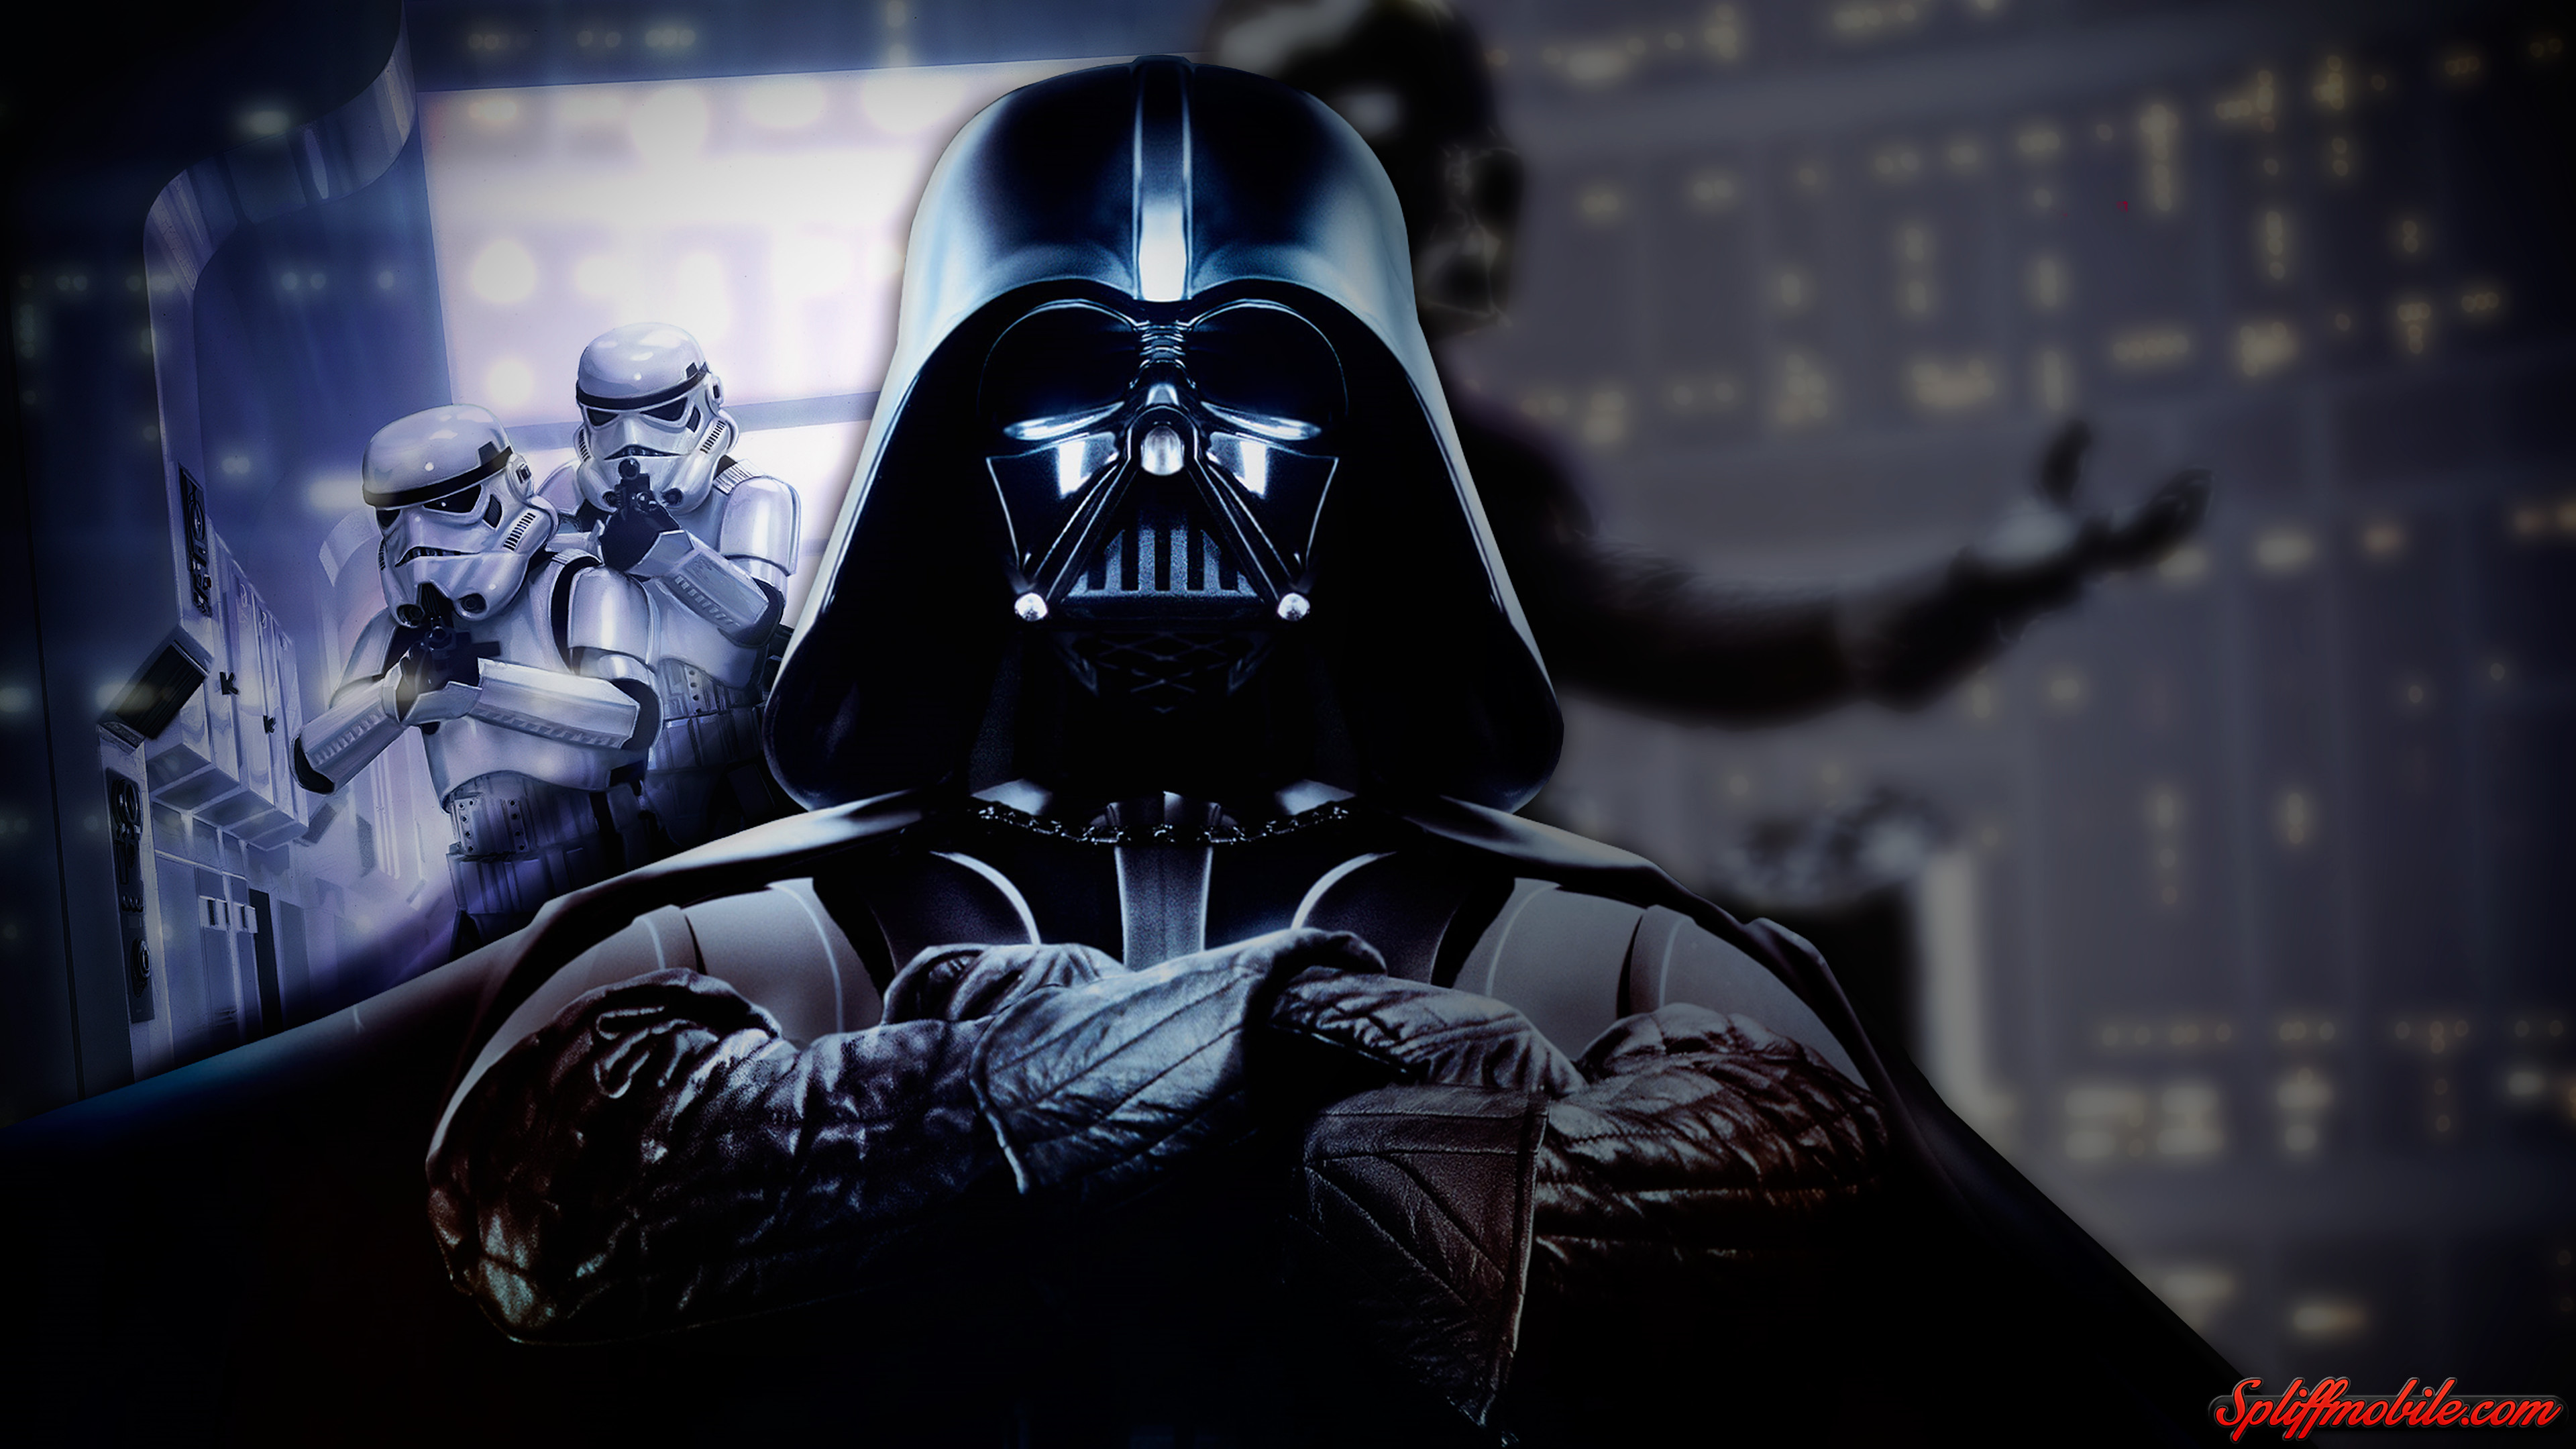 3840x2160 Star Wars Darth Vader Wallpaper